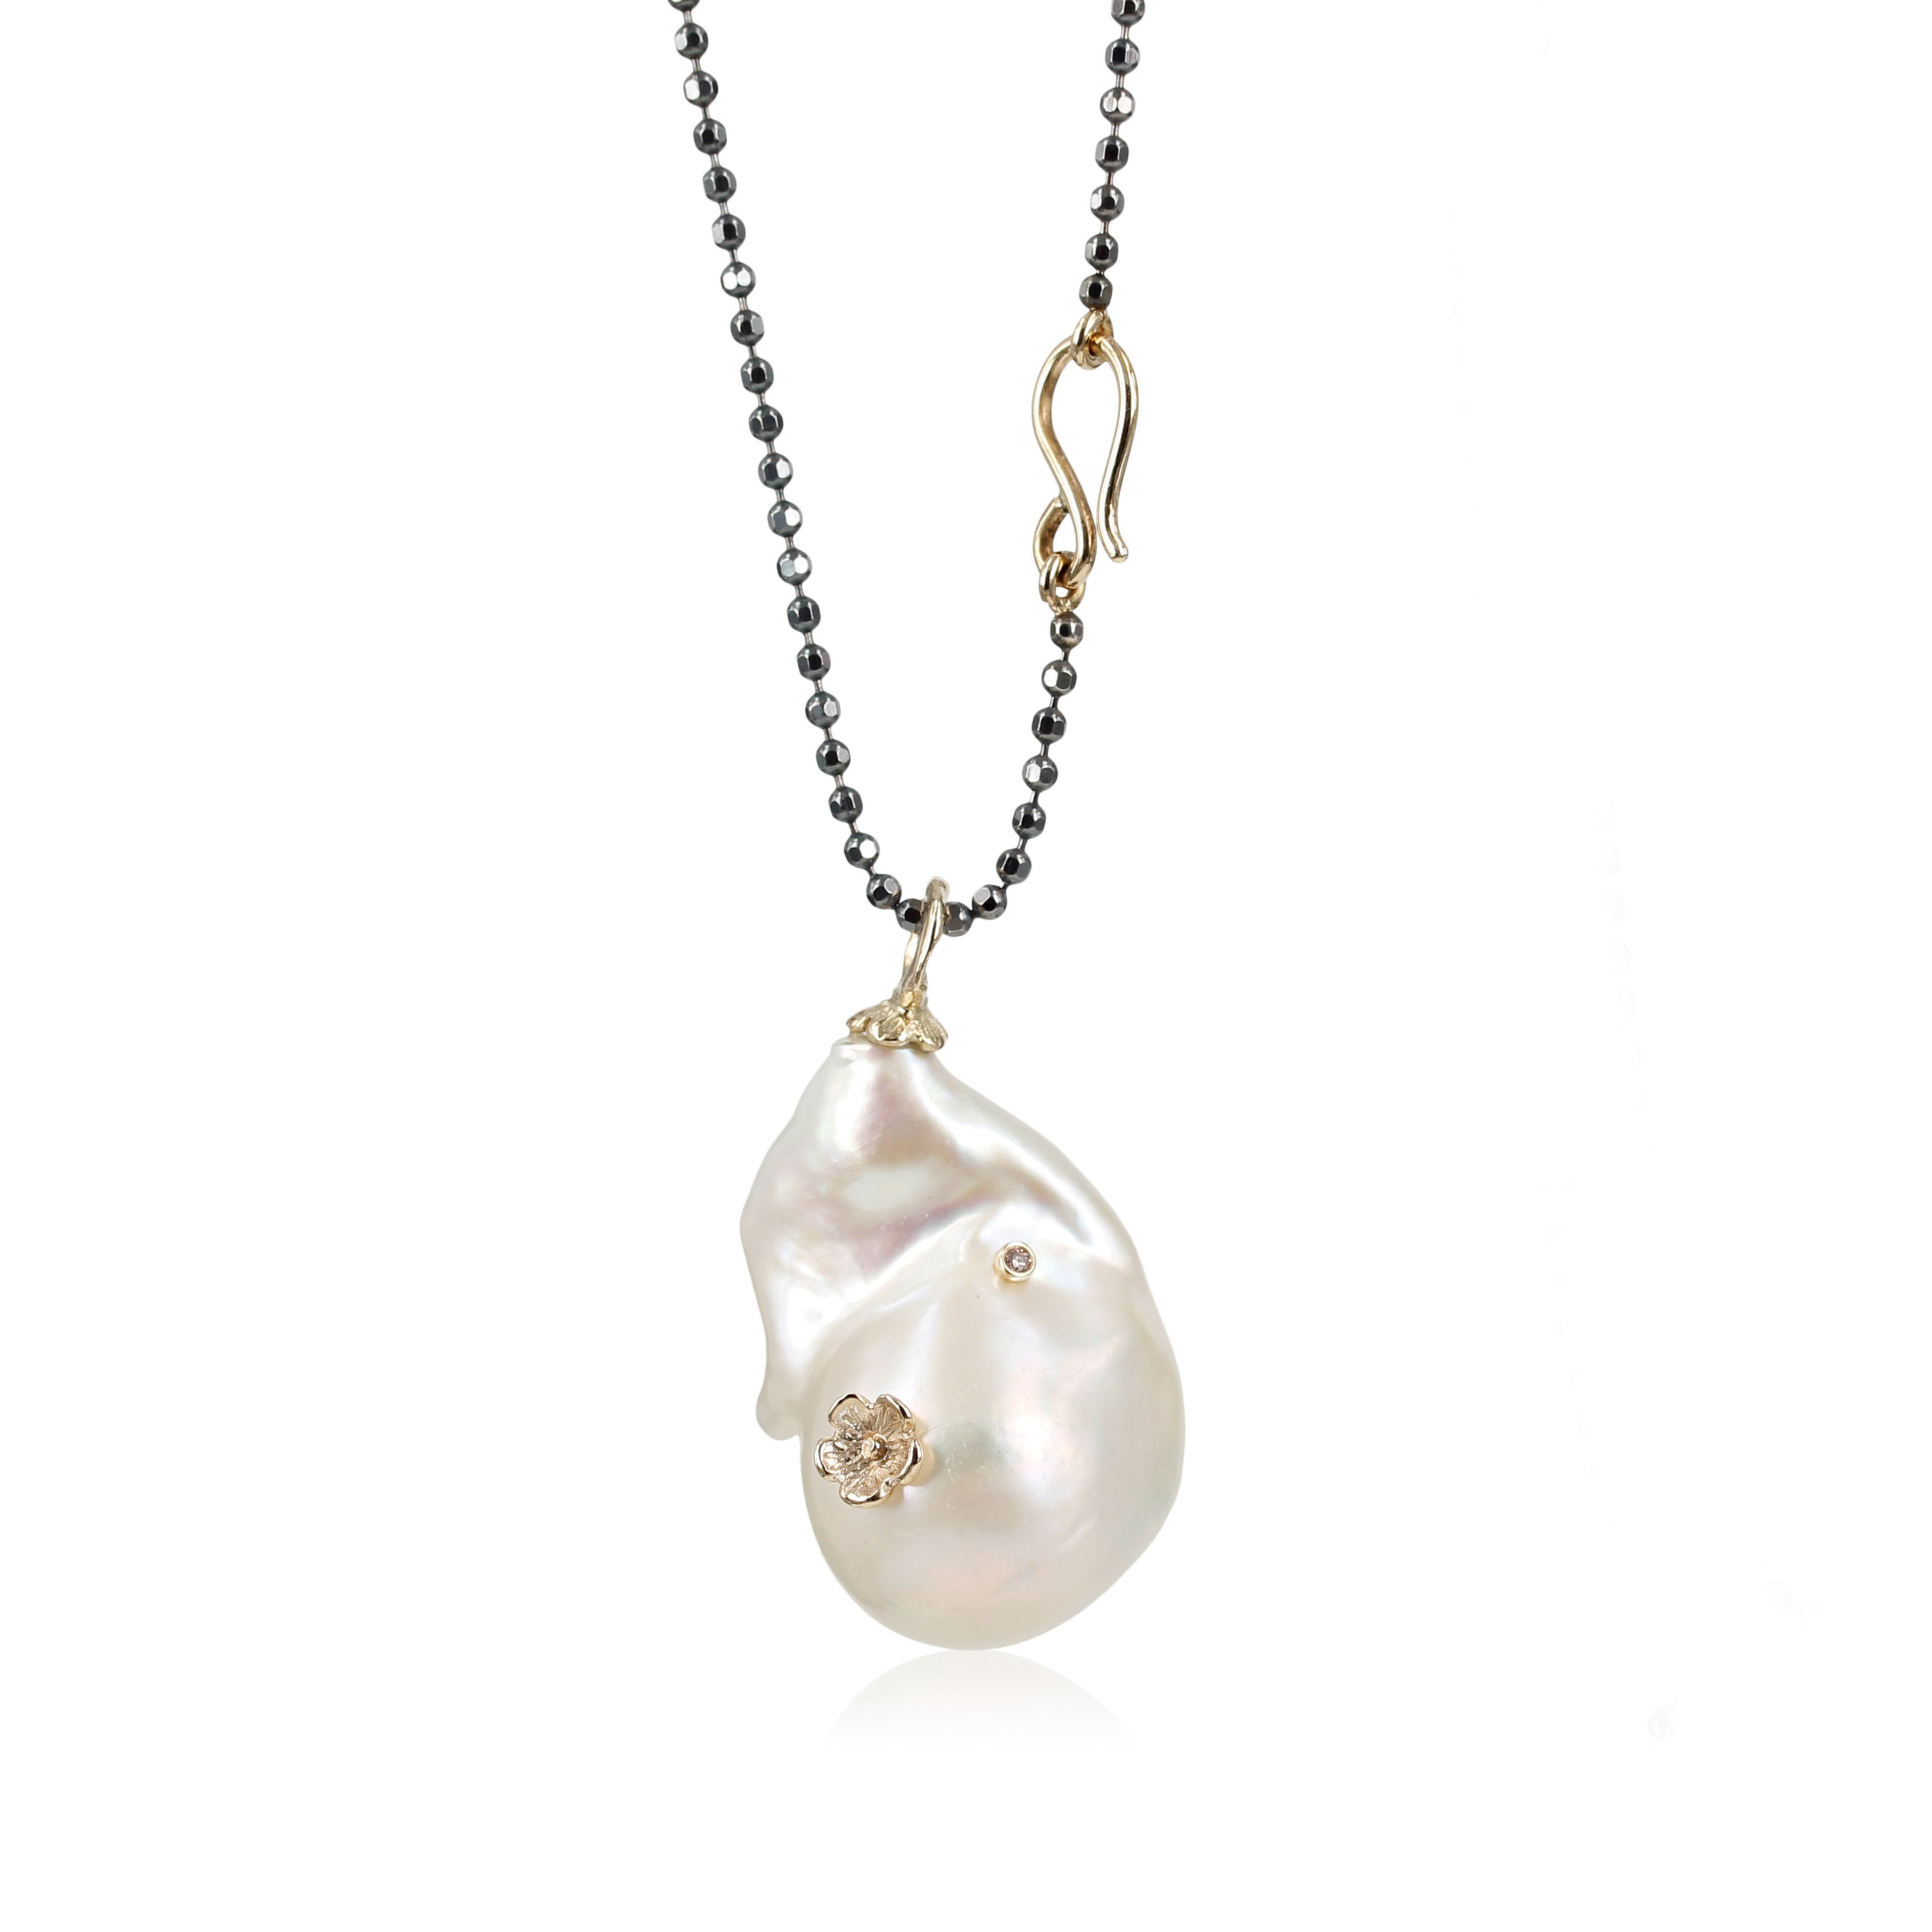 Perle vedhæng - Stor hvid ferskvandsperle & diamant   Smuk og unik perle, med bløde bølger - påsat  rosa diamant 0,01 ct. og fin sommerblomst.   Vedhænget er skabt i 14 kt. guld.